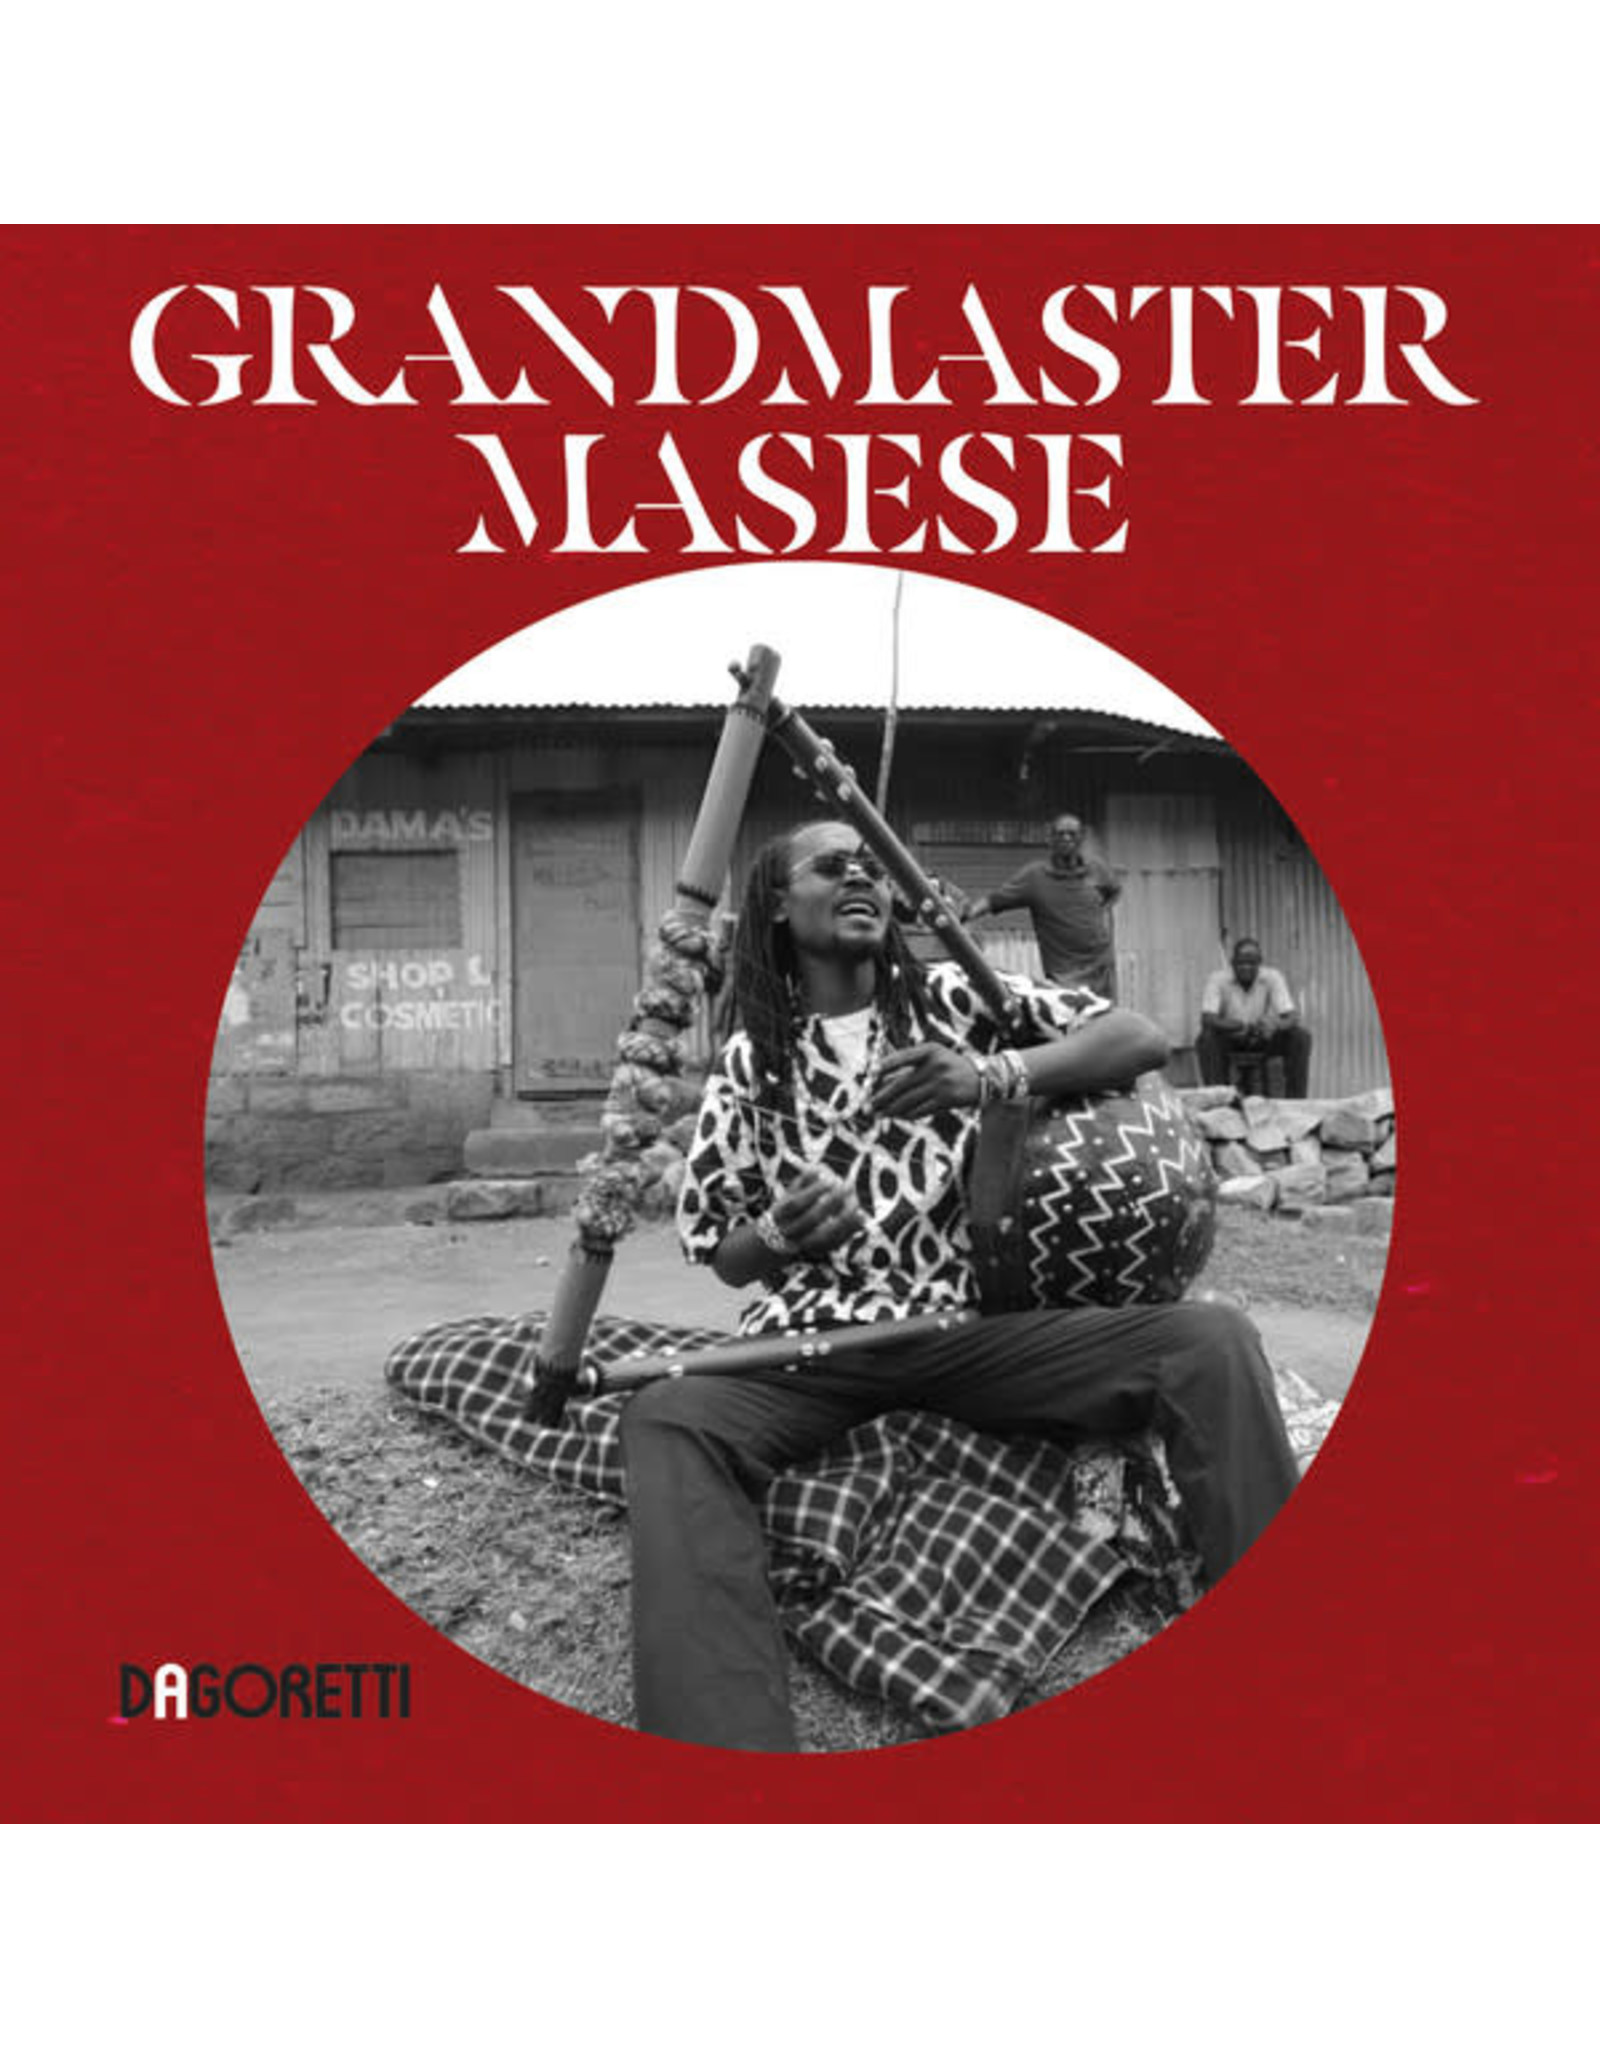 New Vinyl Grandmaster Masese - S/T LP